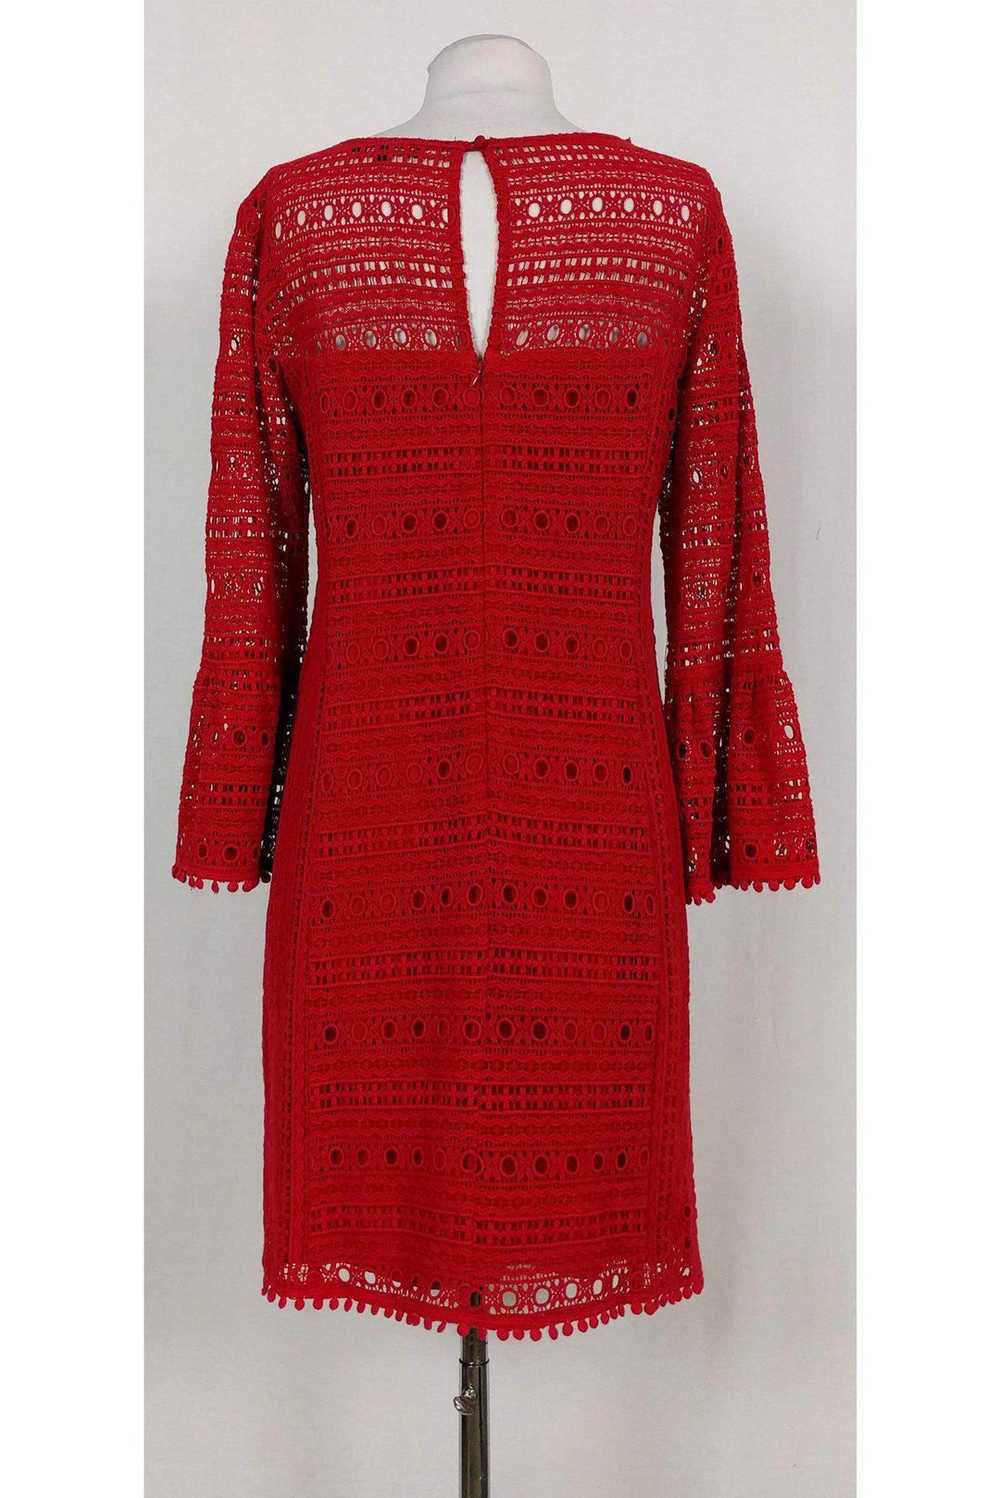 Nanette Lepore - Red Eyelet Dress w/ Bell Sleeves… - image 3